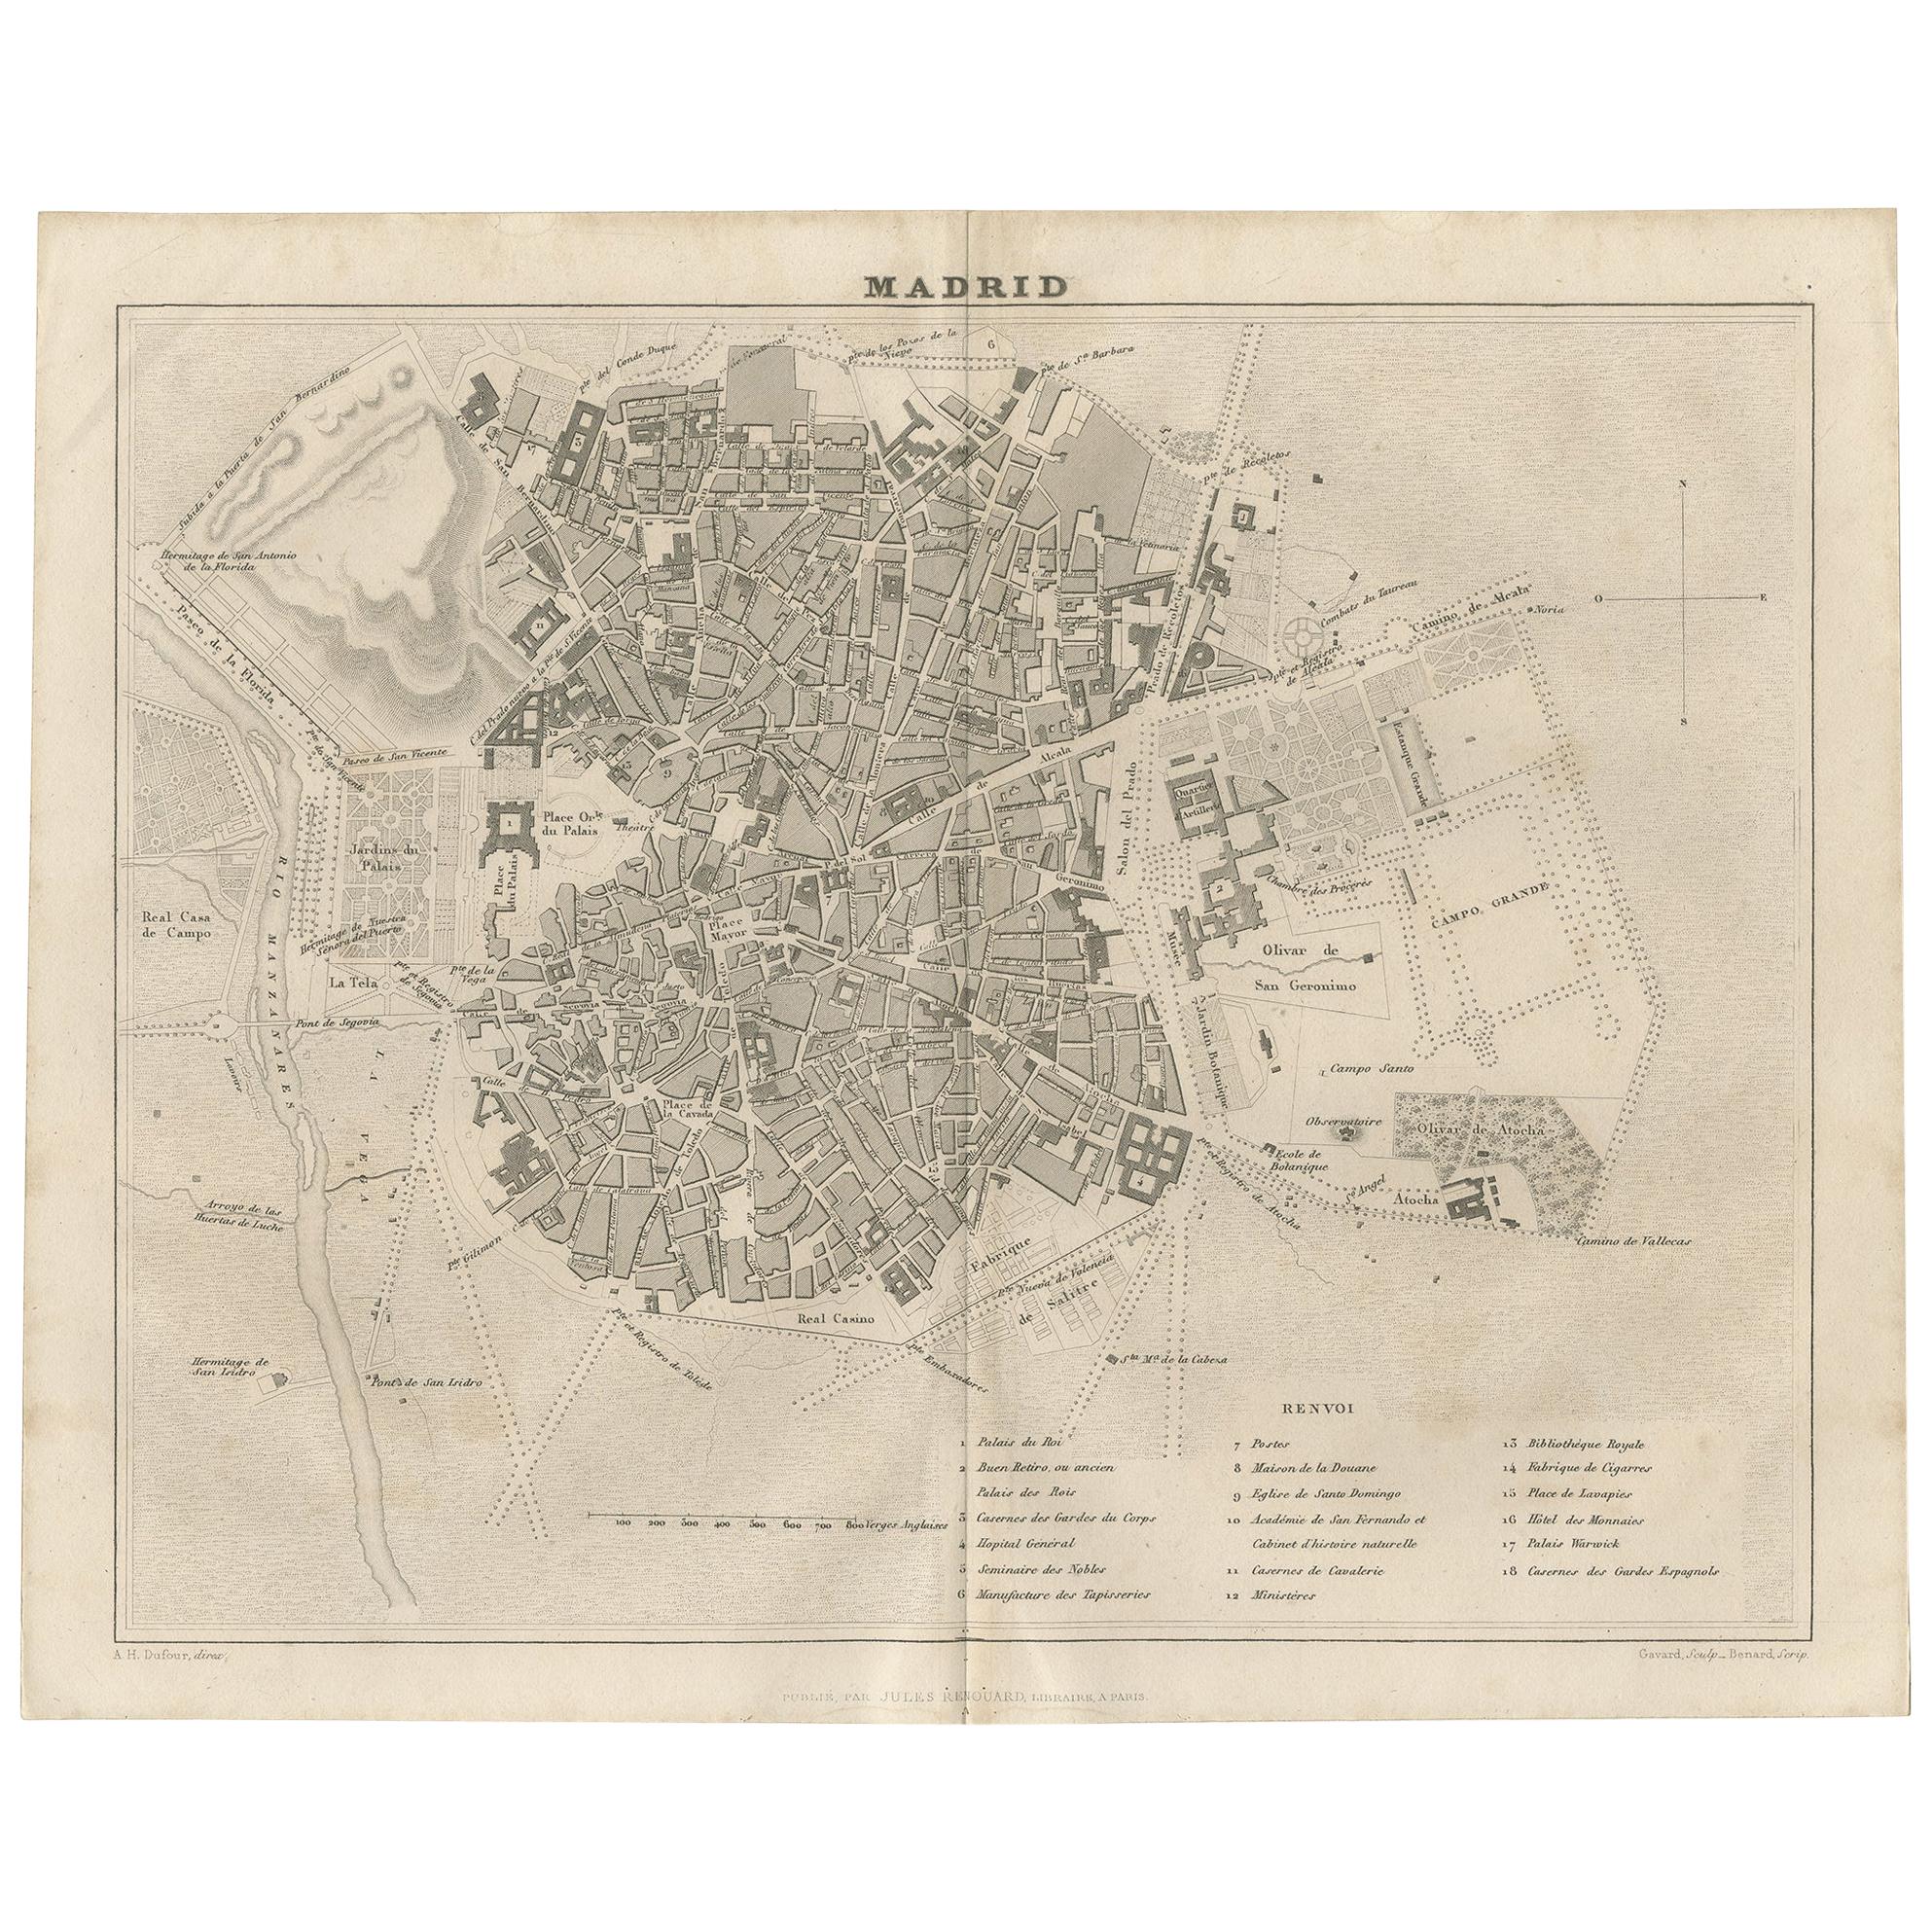 Carte ancienne de la ville de Madrid par Balbi '1847'